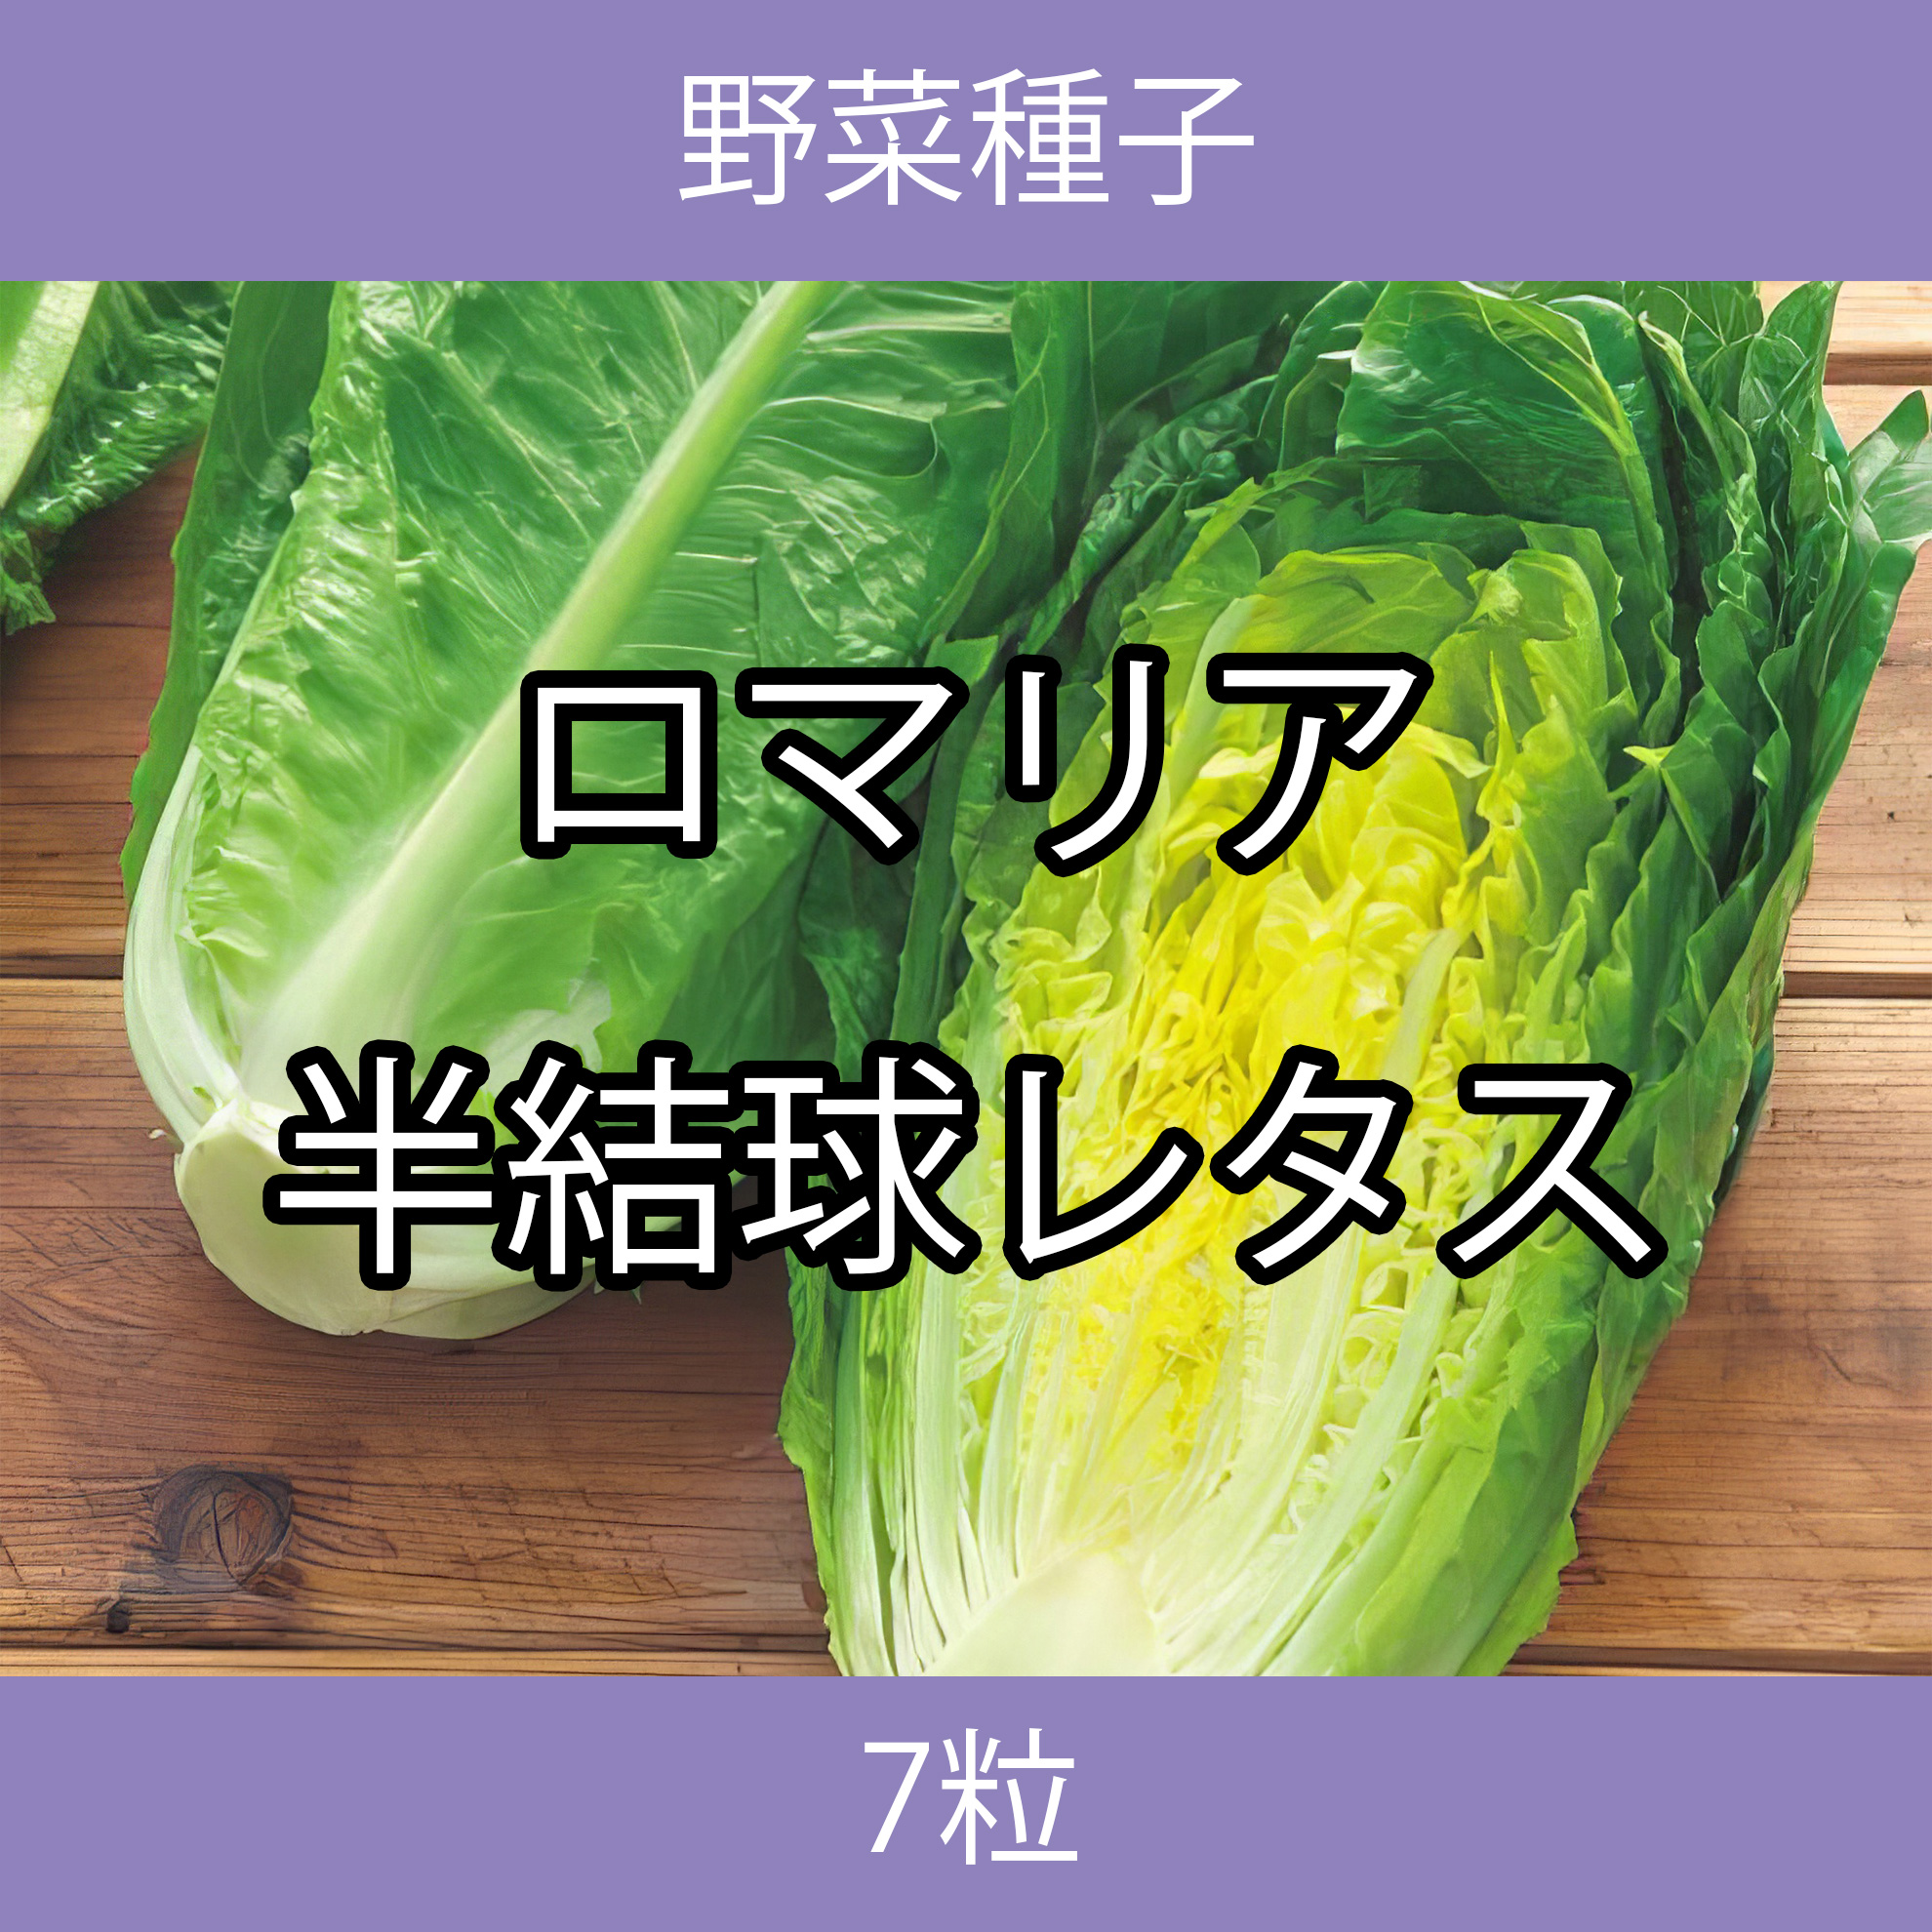 野菜種子 TVA07 ロマリア半結球レタス 7粒